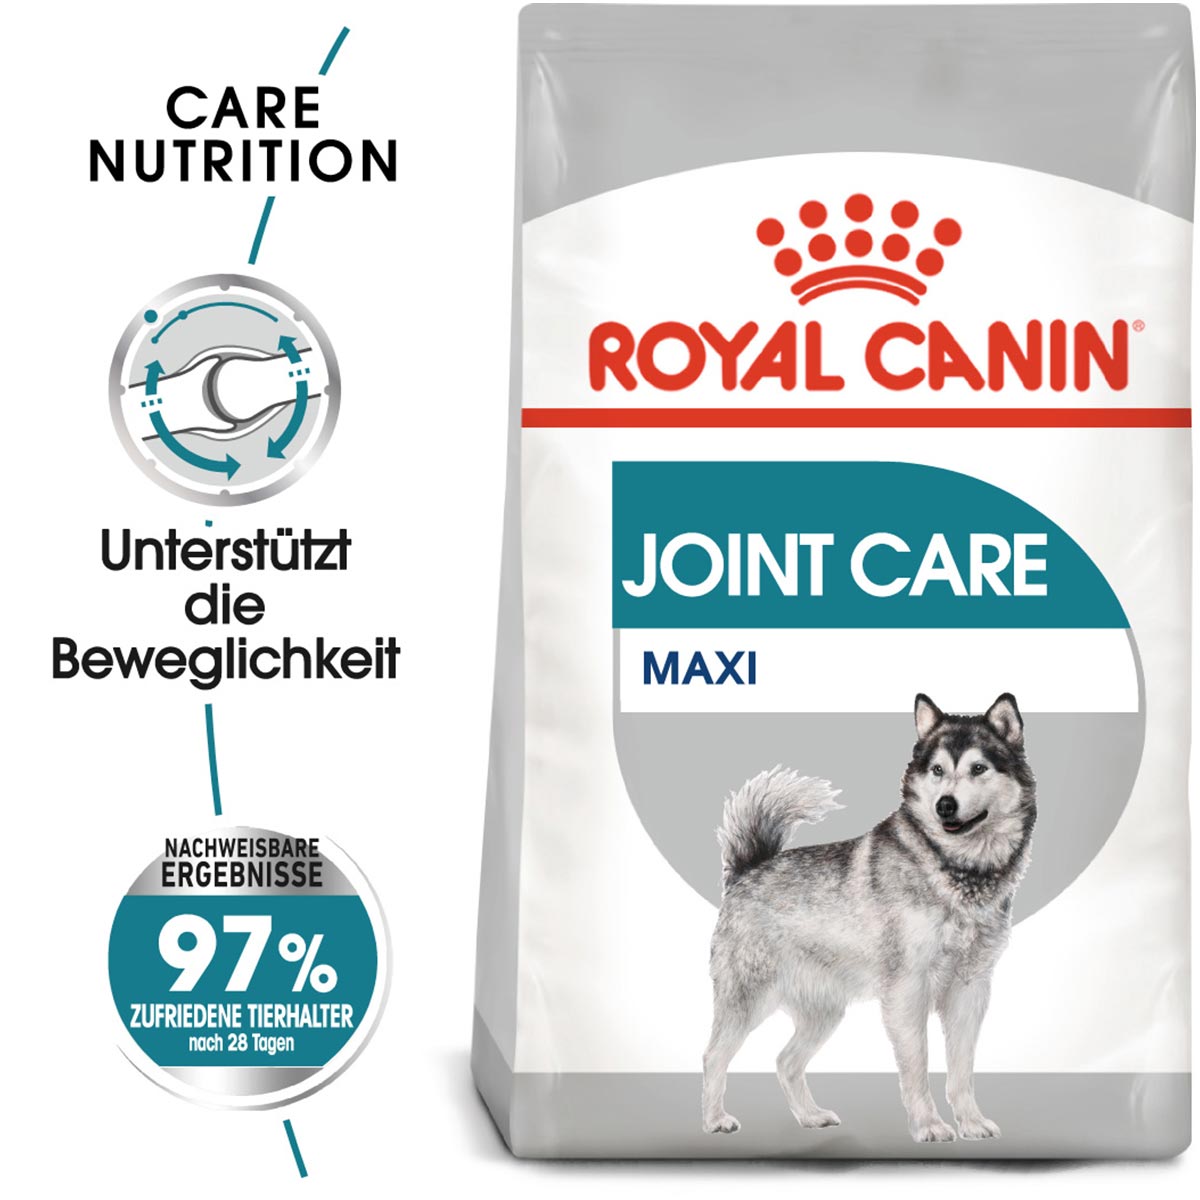 ROYAL CANIN JOINT CARE MAXI Trockenfutter für große Hunde mit empfindlichen Gelenken 2x10kg